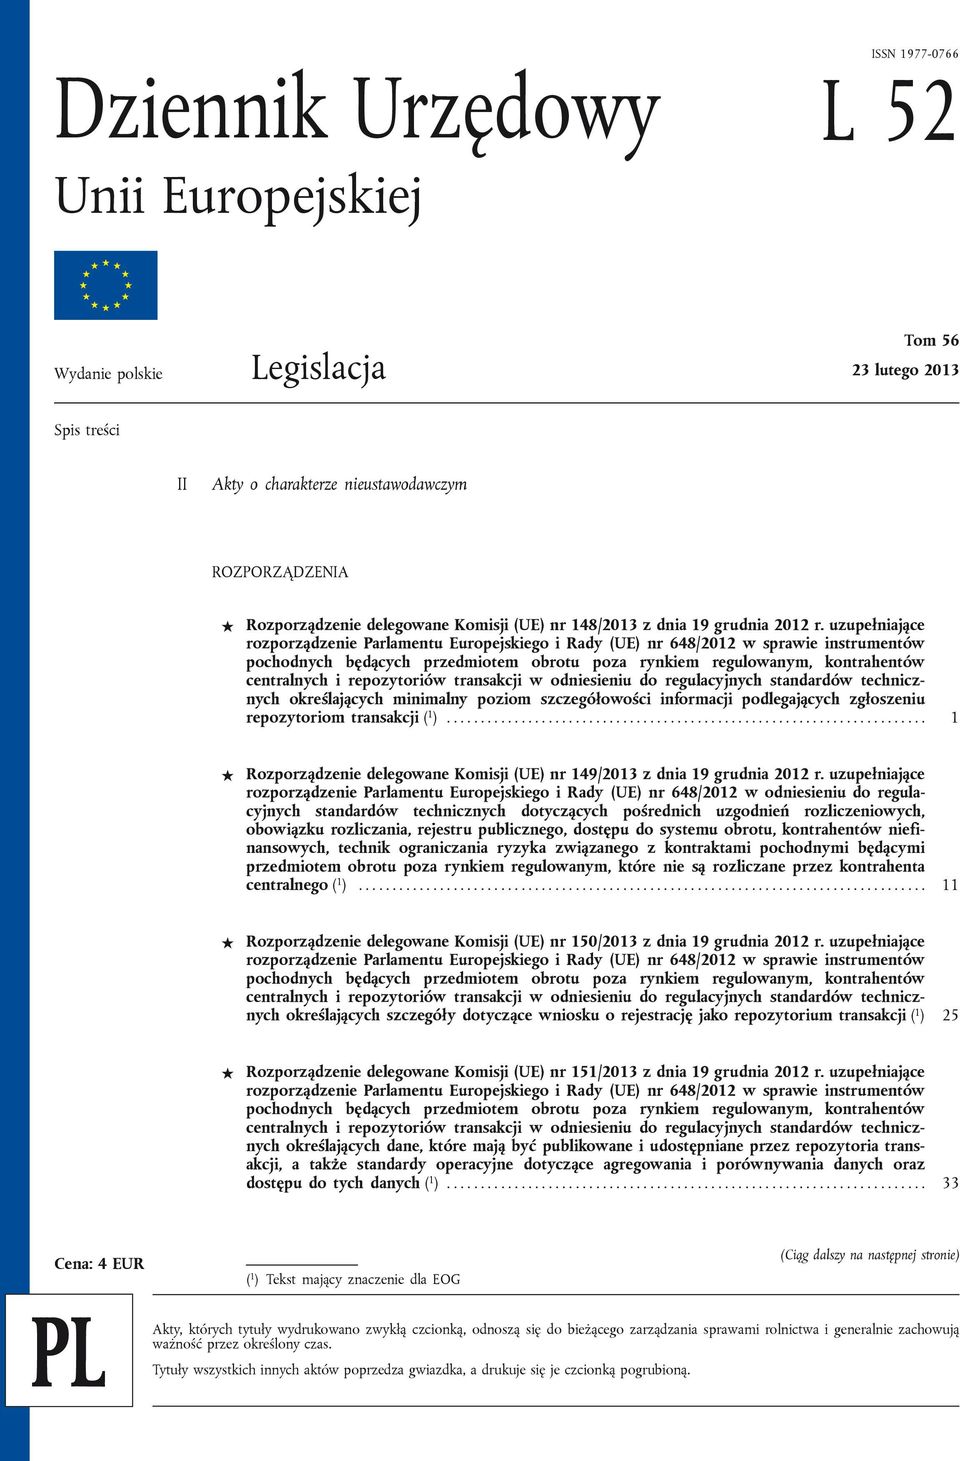 uzupełniające rozporządzenie Parlamentu Europejskiego i Rady (UE) nr 648/2012 w sprawie instrumentów pochodnych będących przedmiotem obrotu poza rynkiem regulowanym, kontrahentów centralnych i